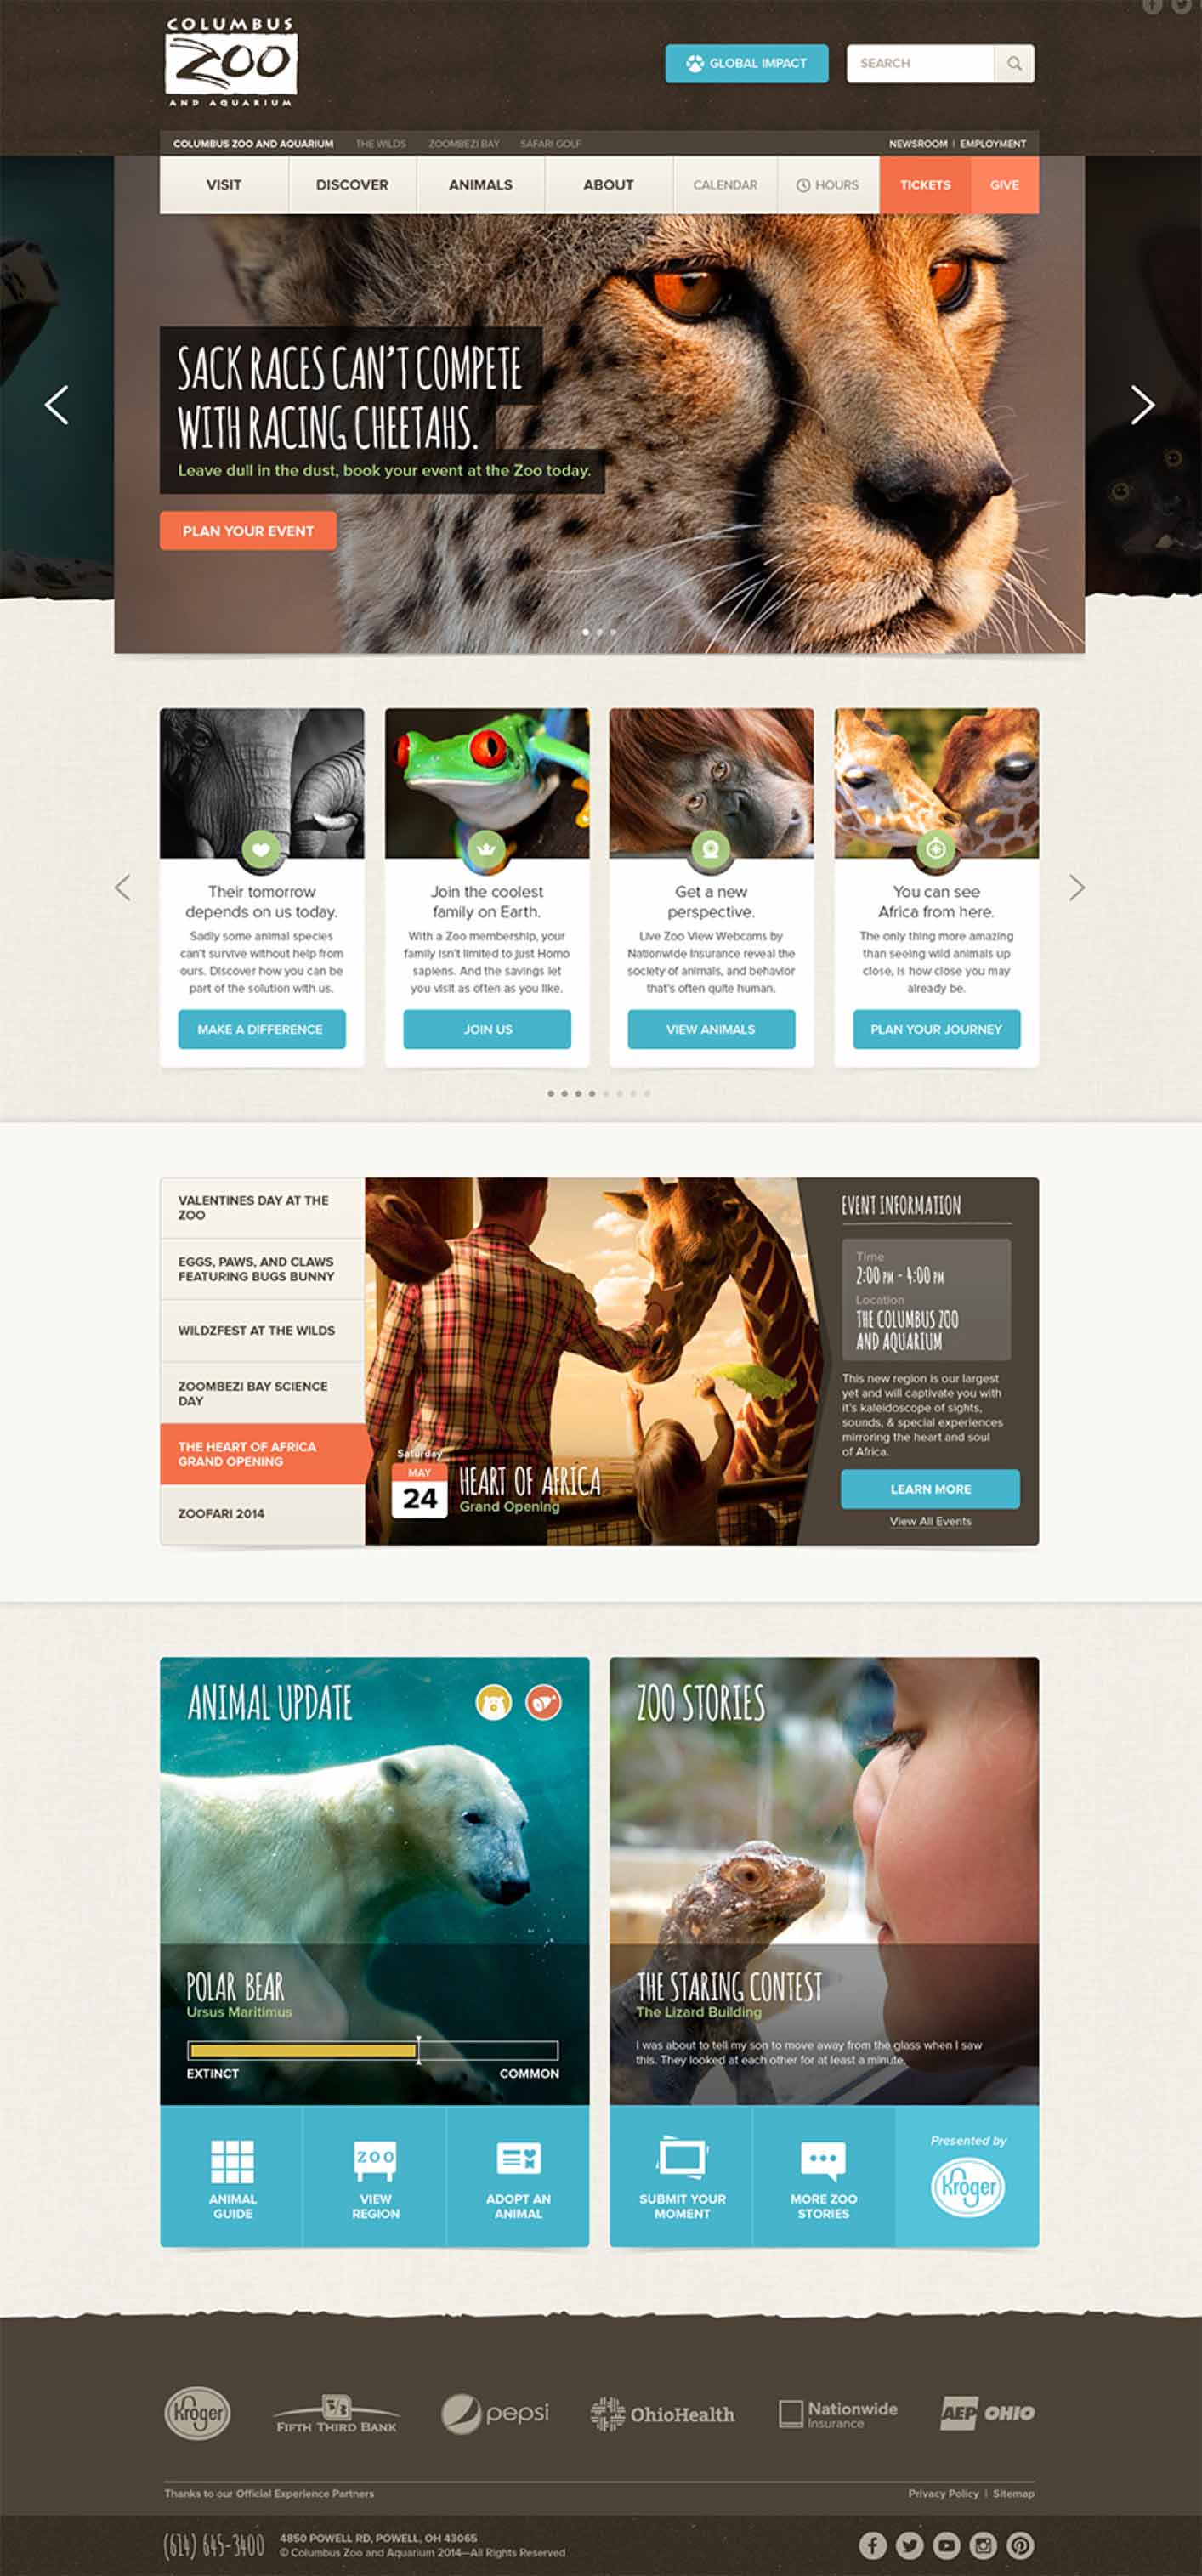 Jetpack | Project - Columbus Zoo Website Design